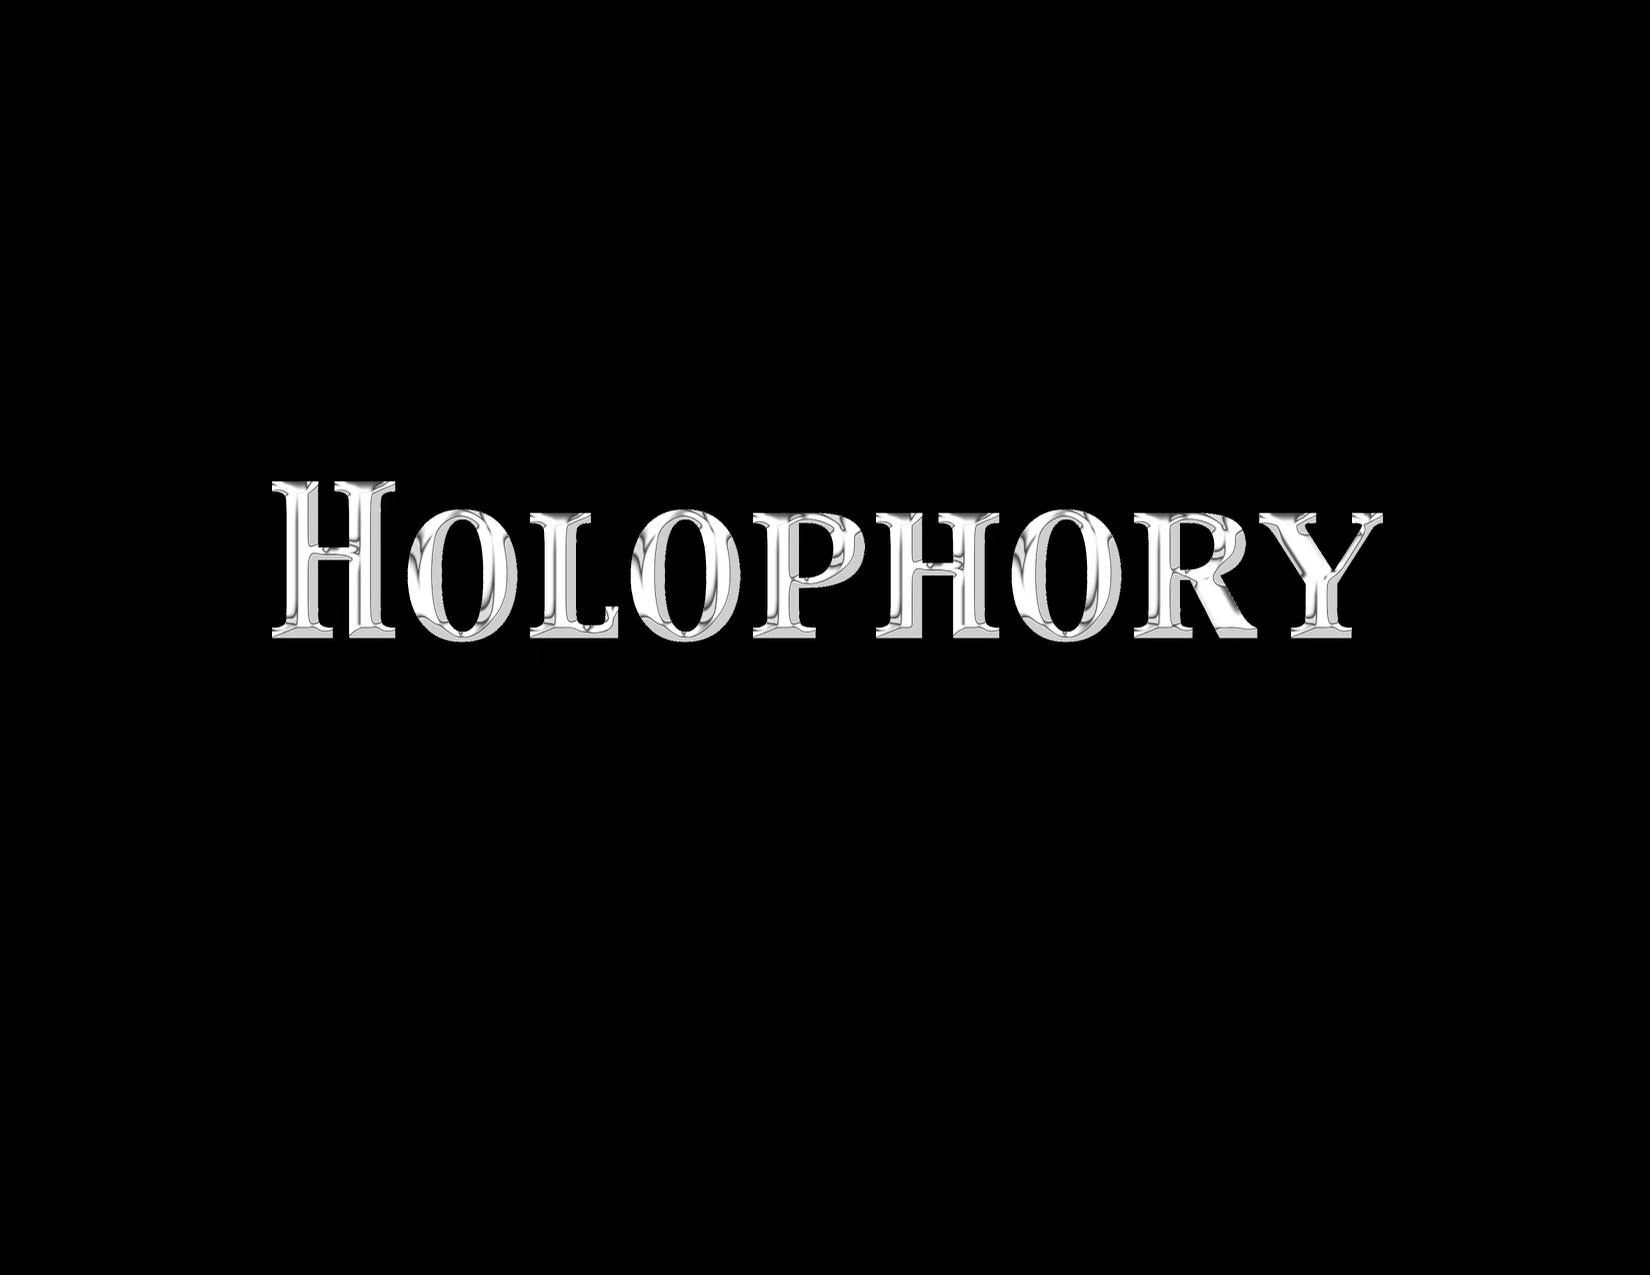 Holophory